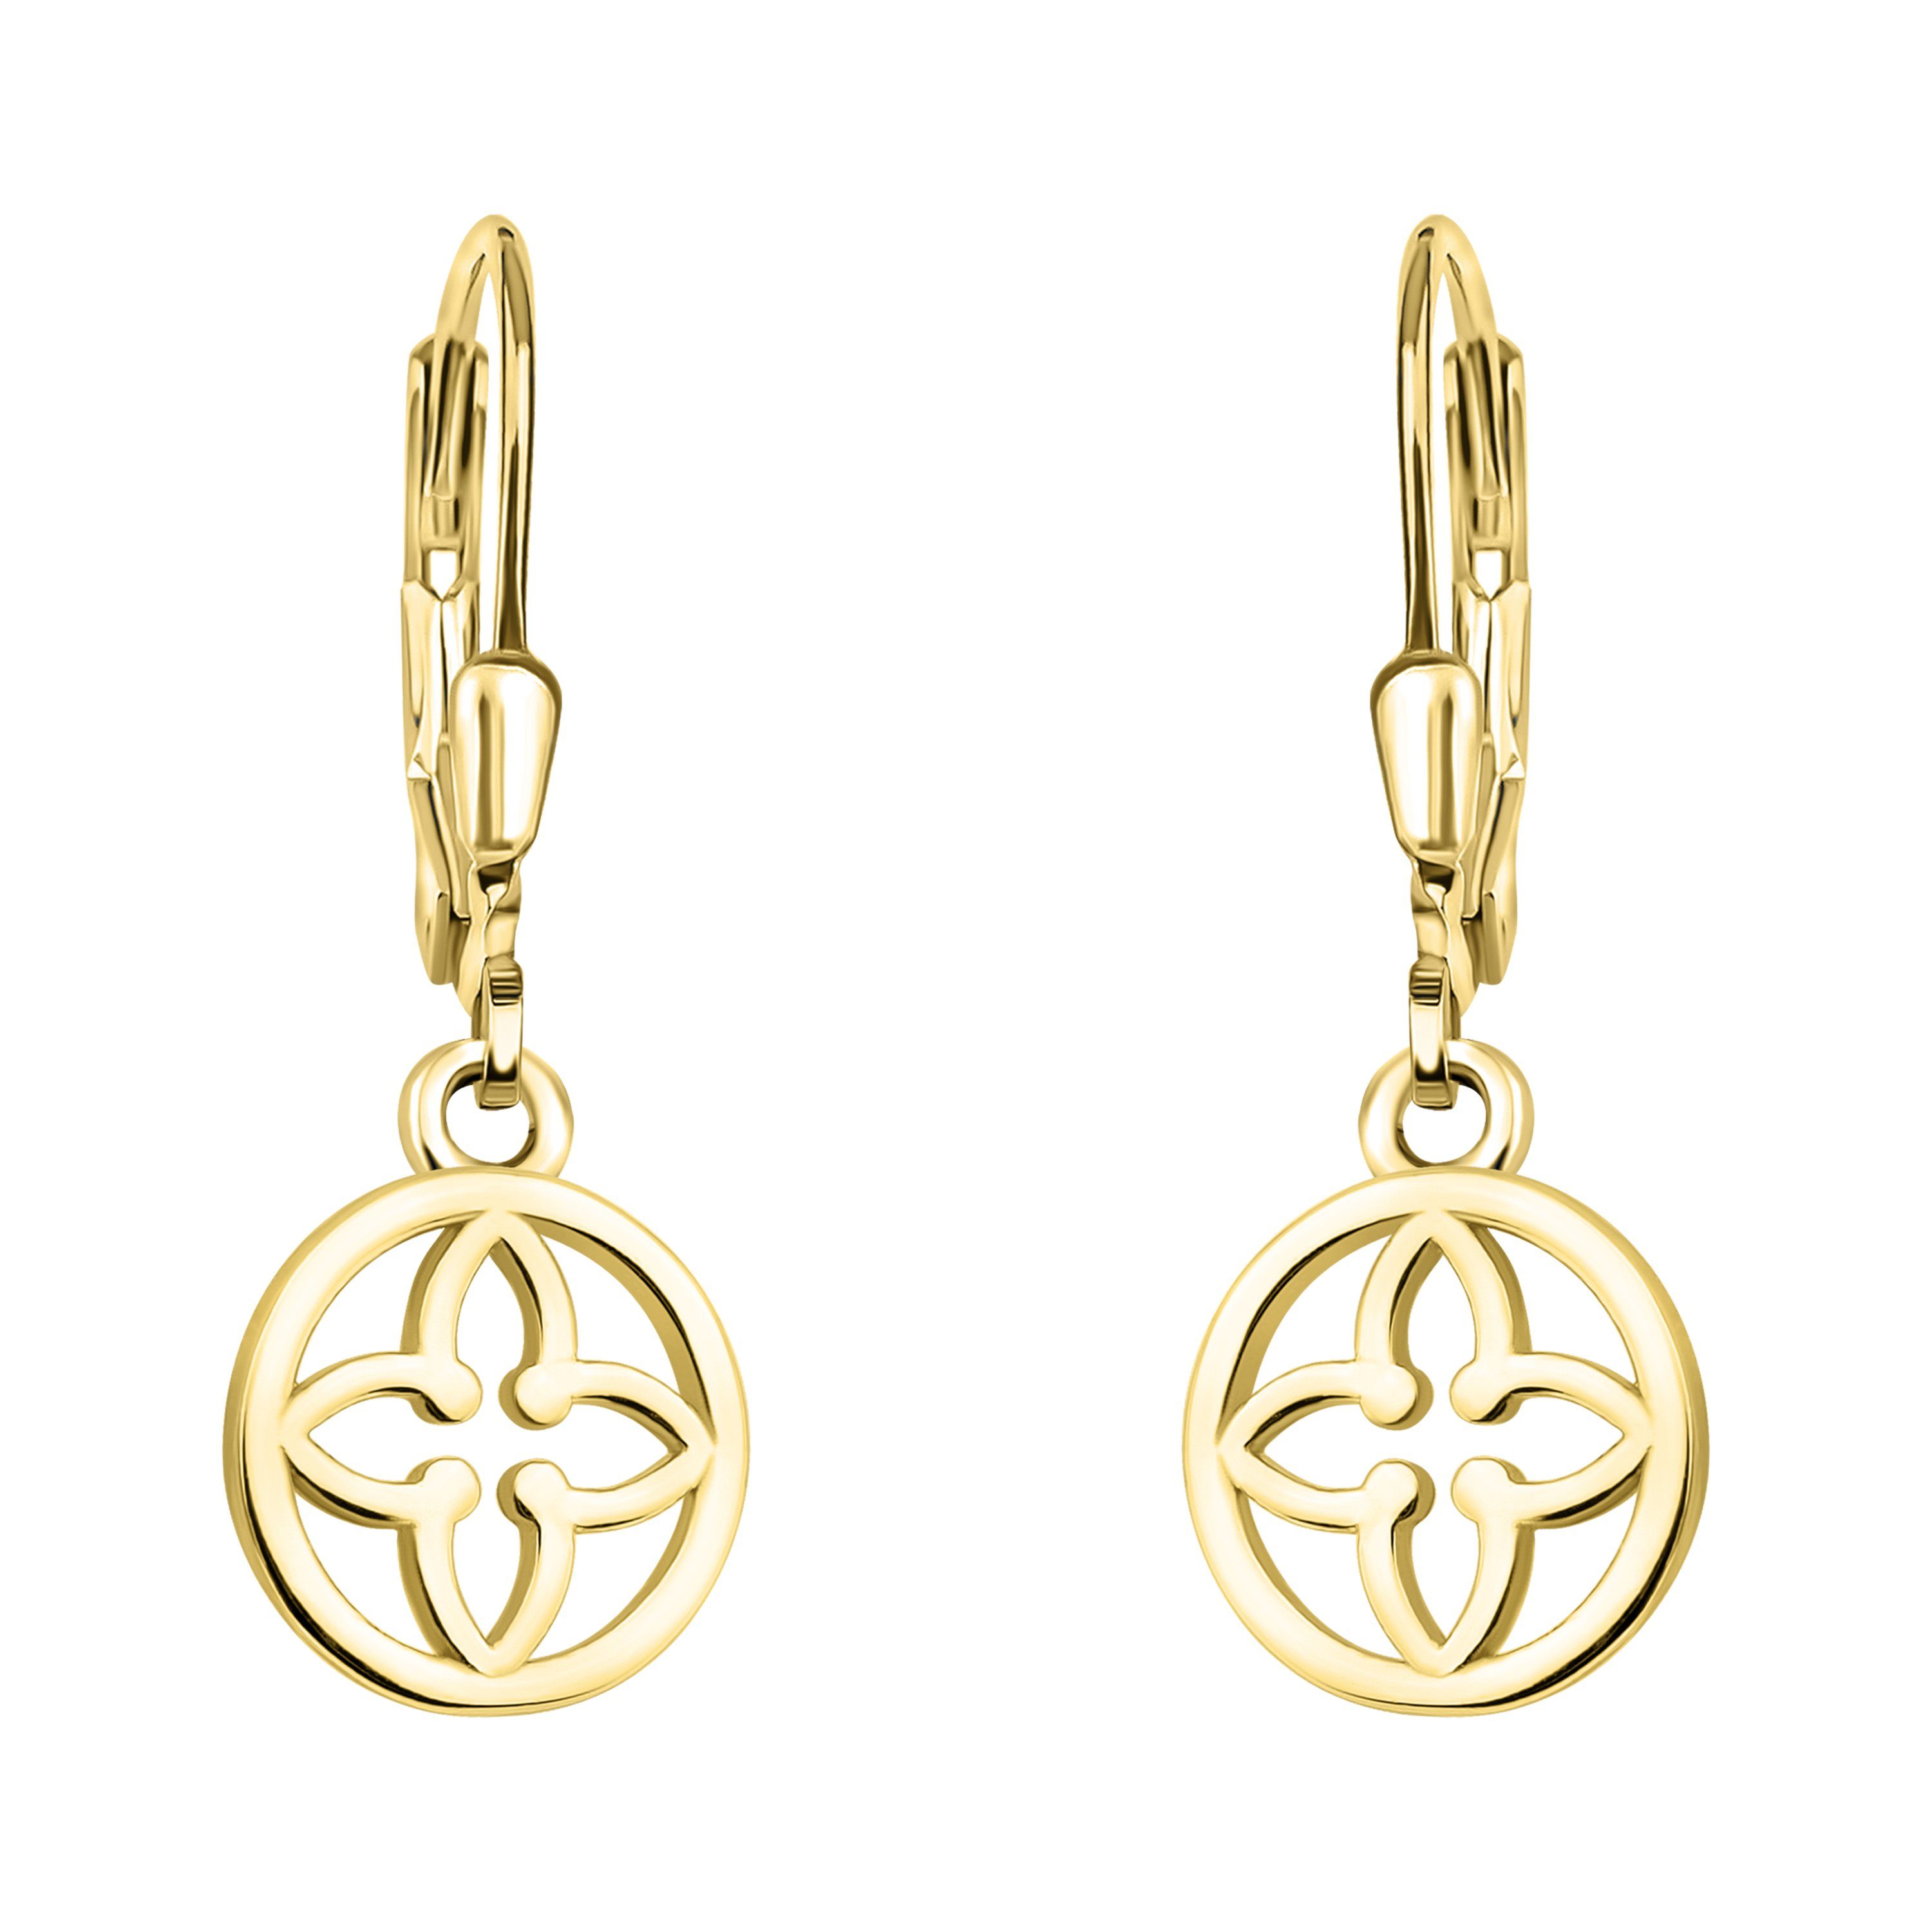 Sofia Milani Paar Ohrhänger Blume Kreis, 925 Silber Damen Schmuck gold